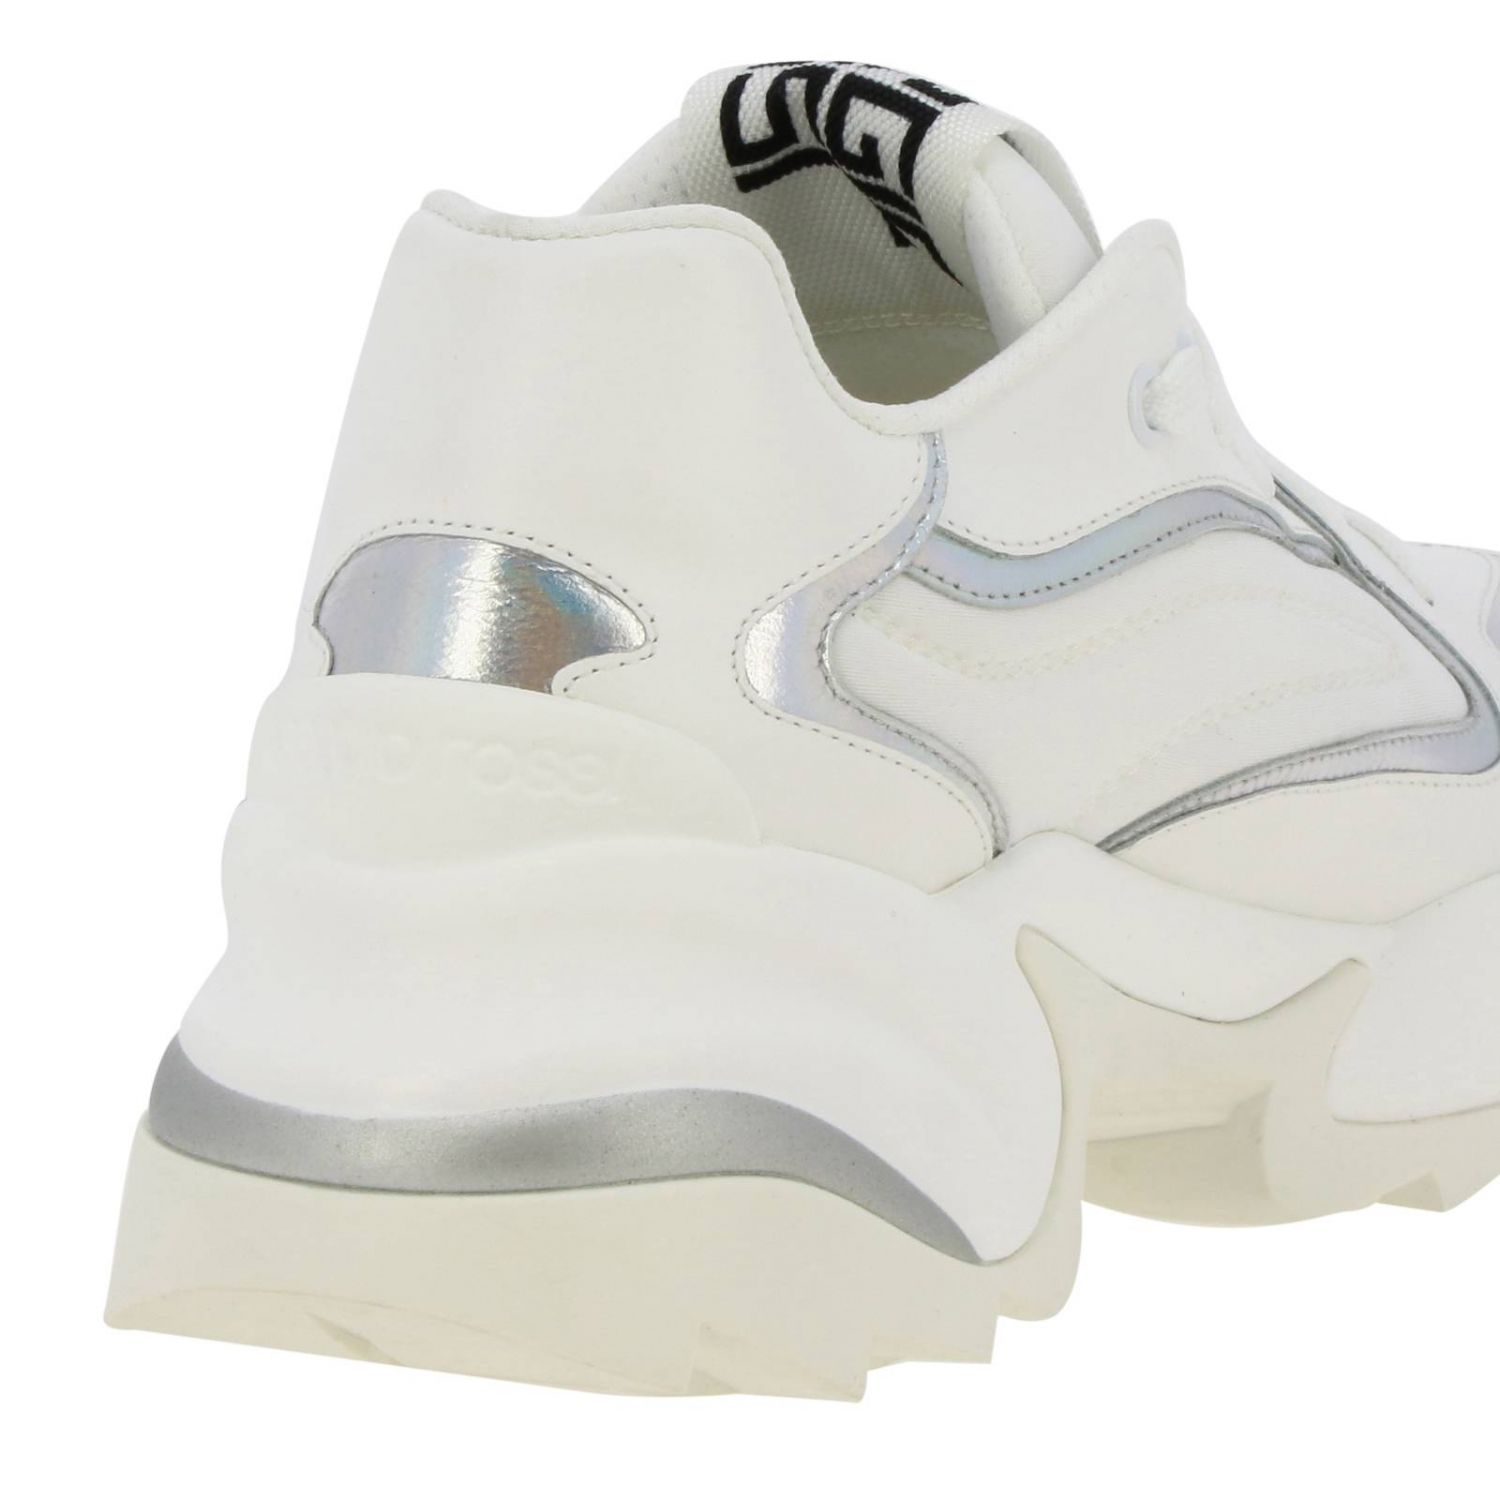 Sneakers Sergio Rossi: Shoes women Sergio Rossi white 4